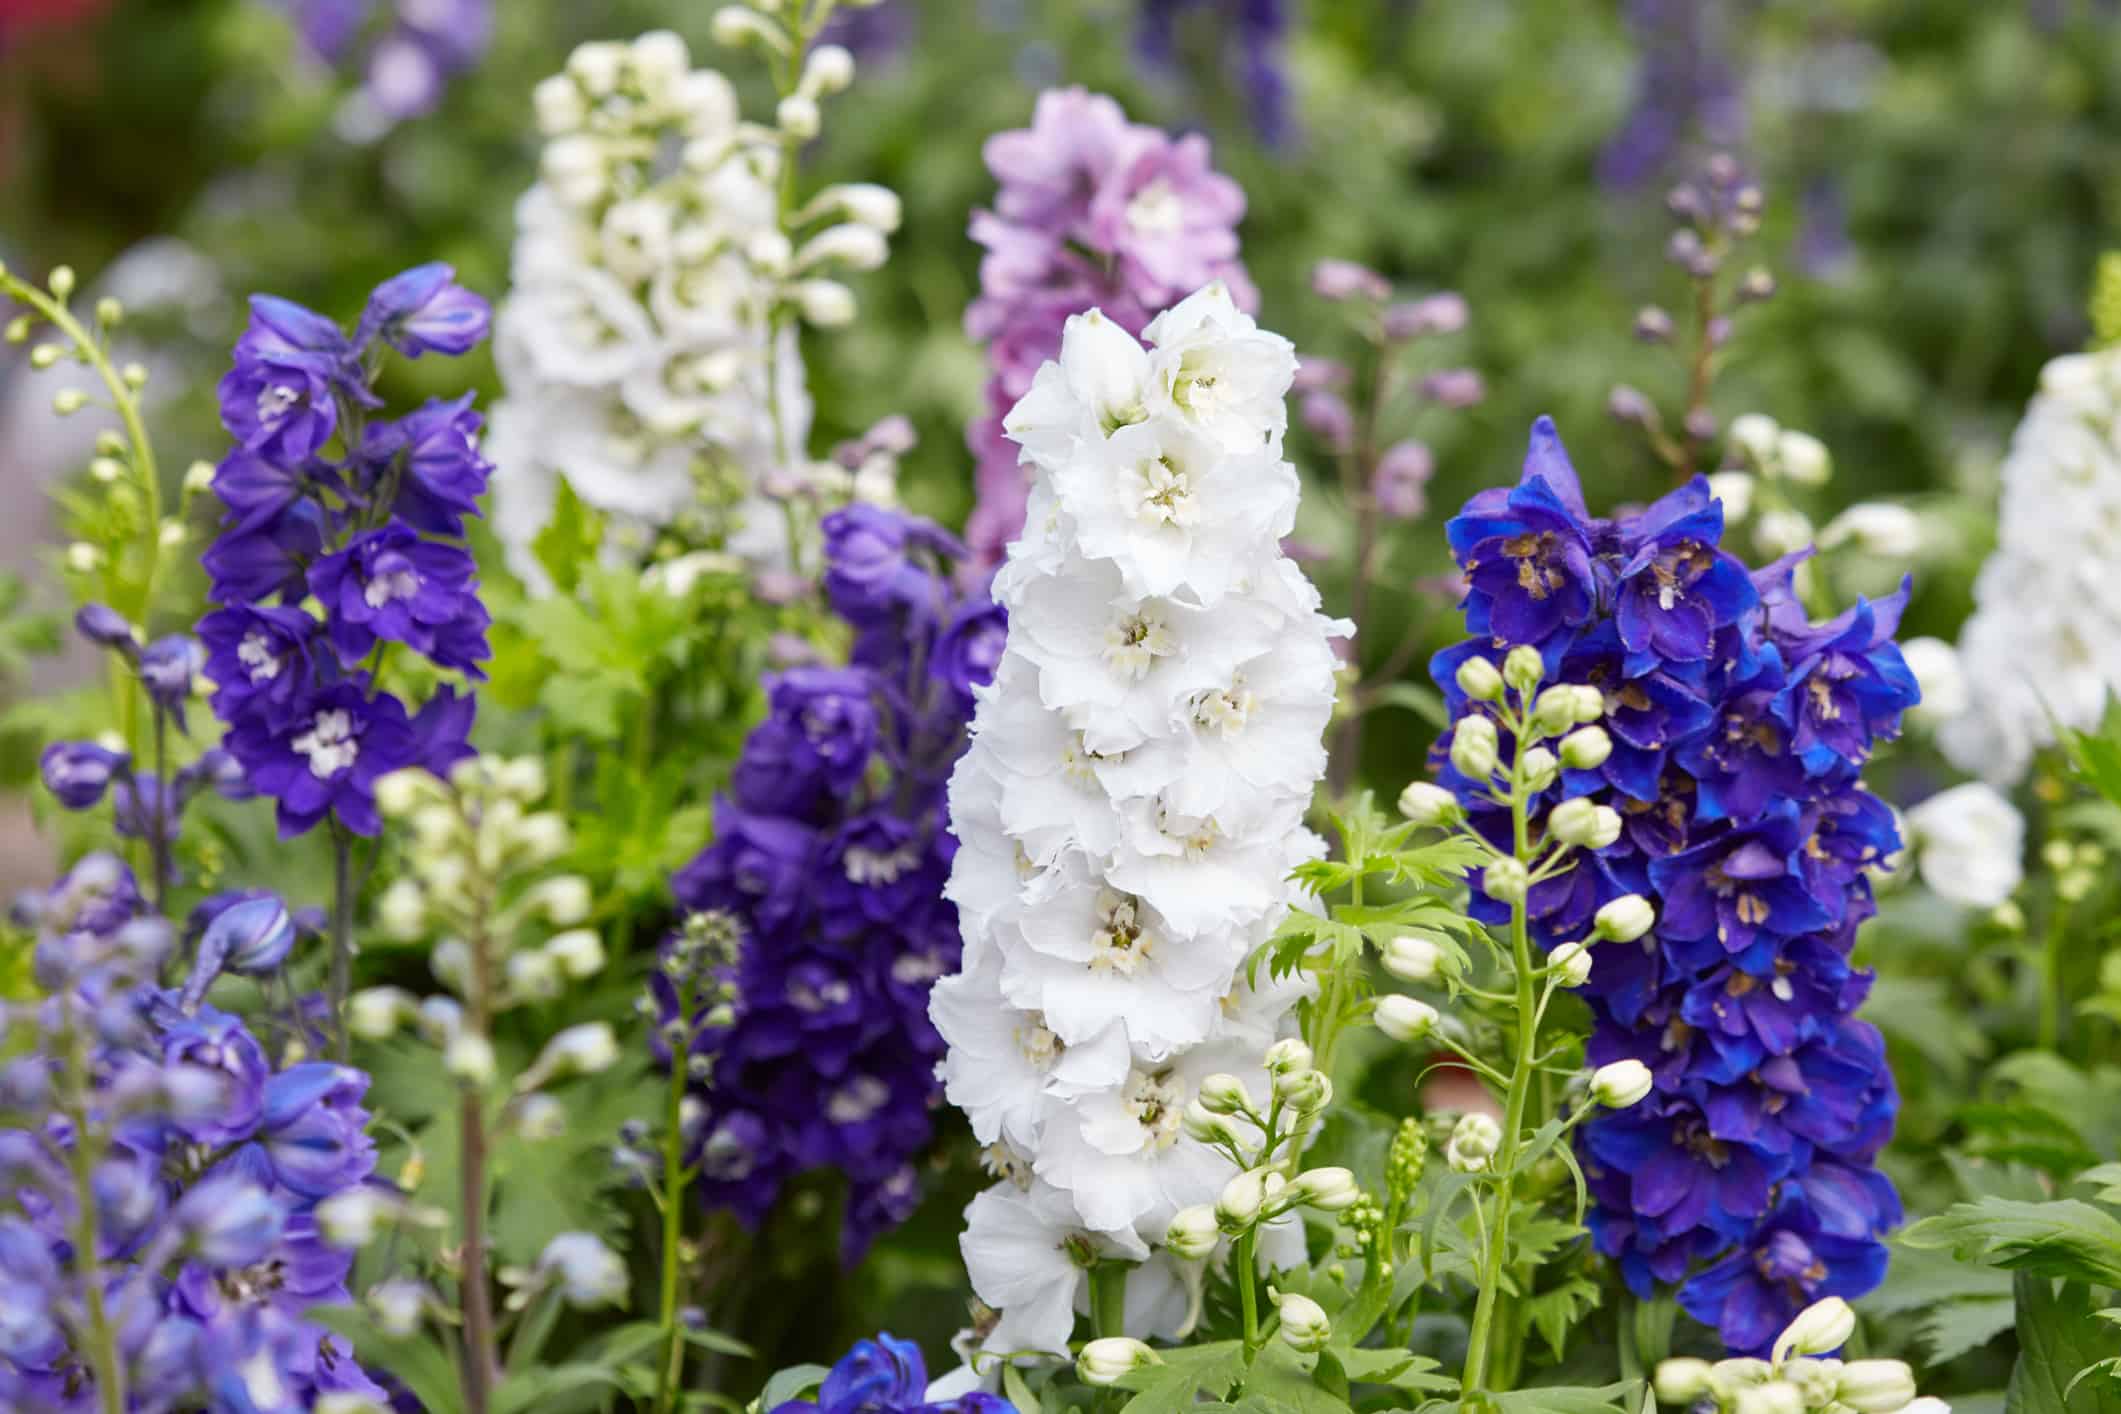 Larkspur flowers, Delphinium elatum in white, purple and blue colors